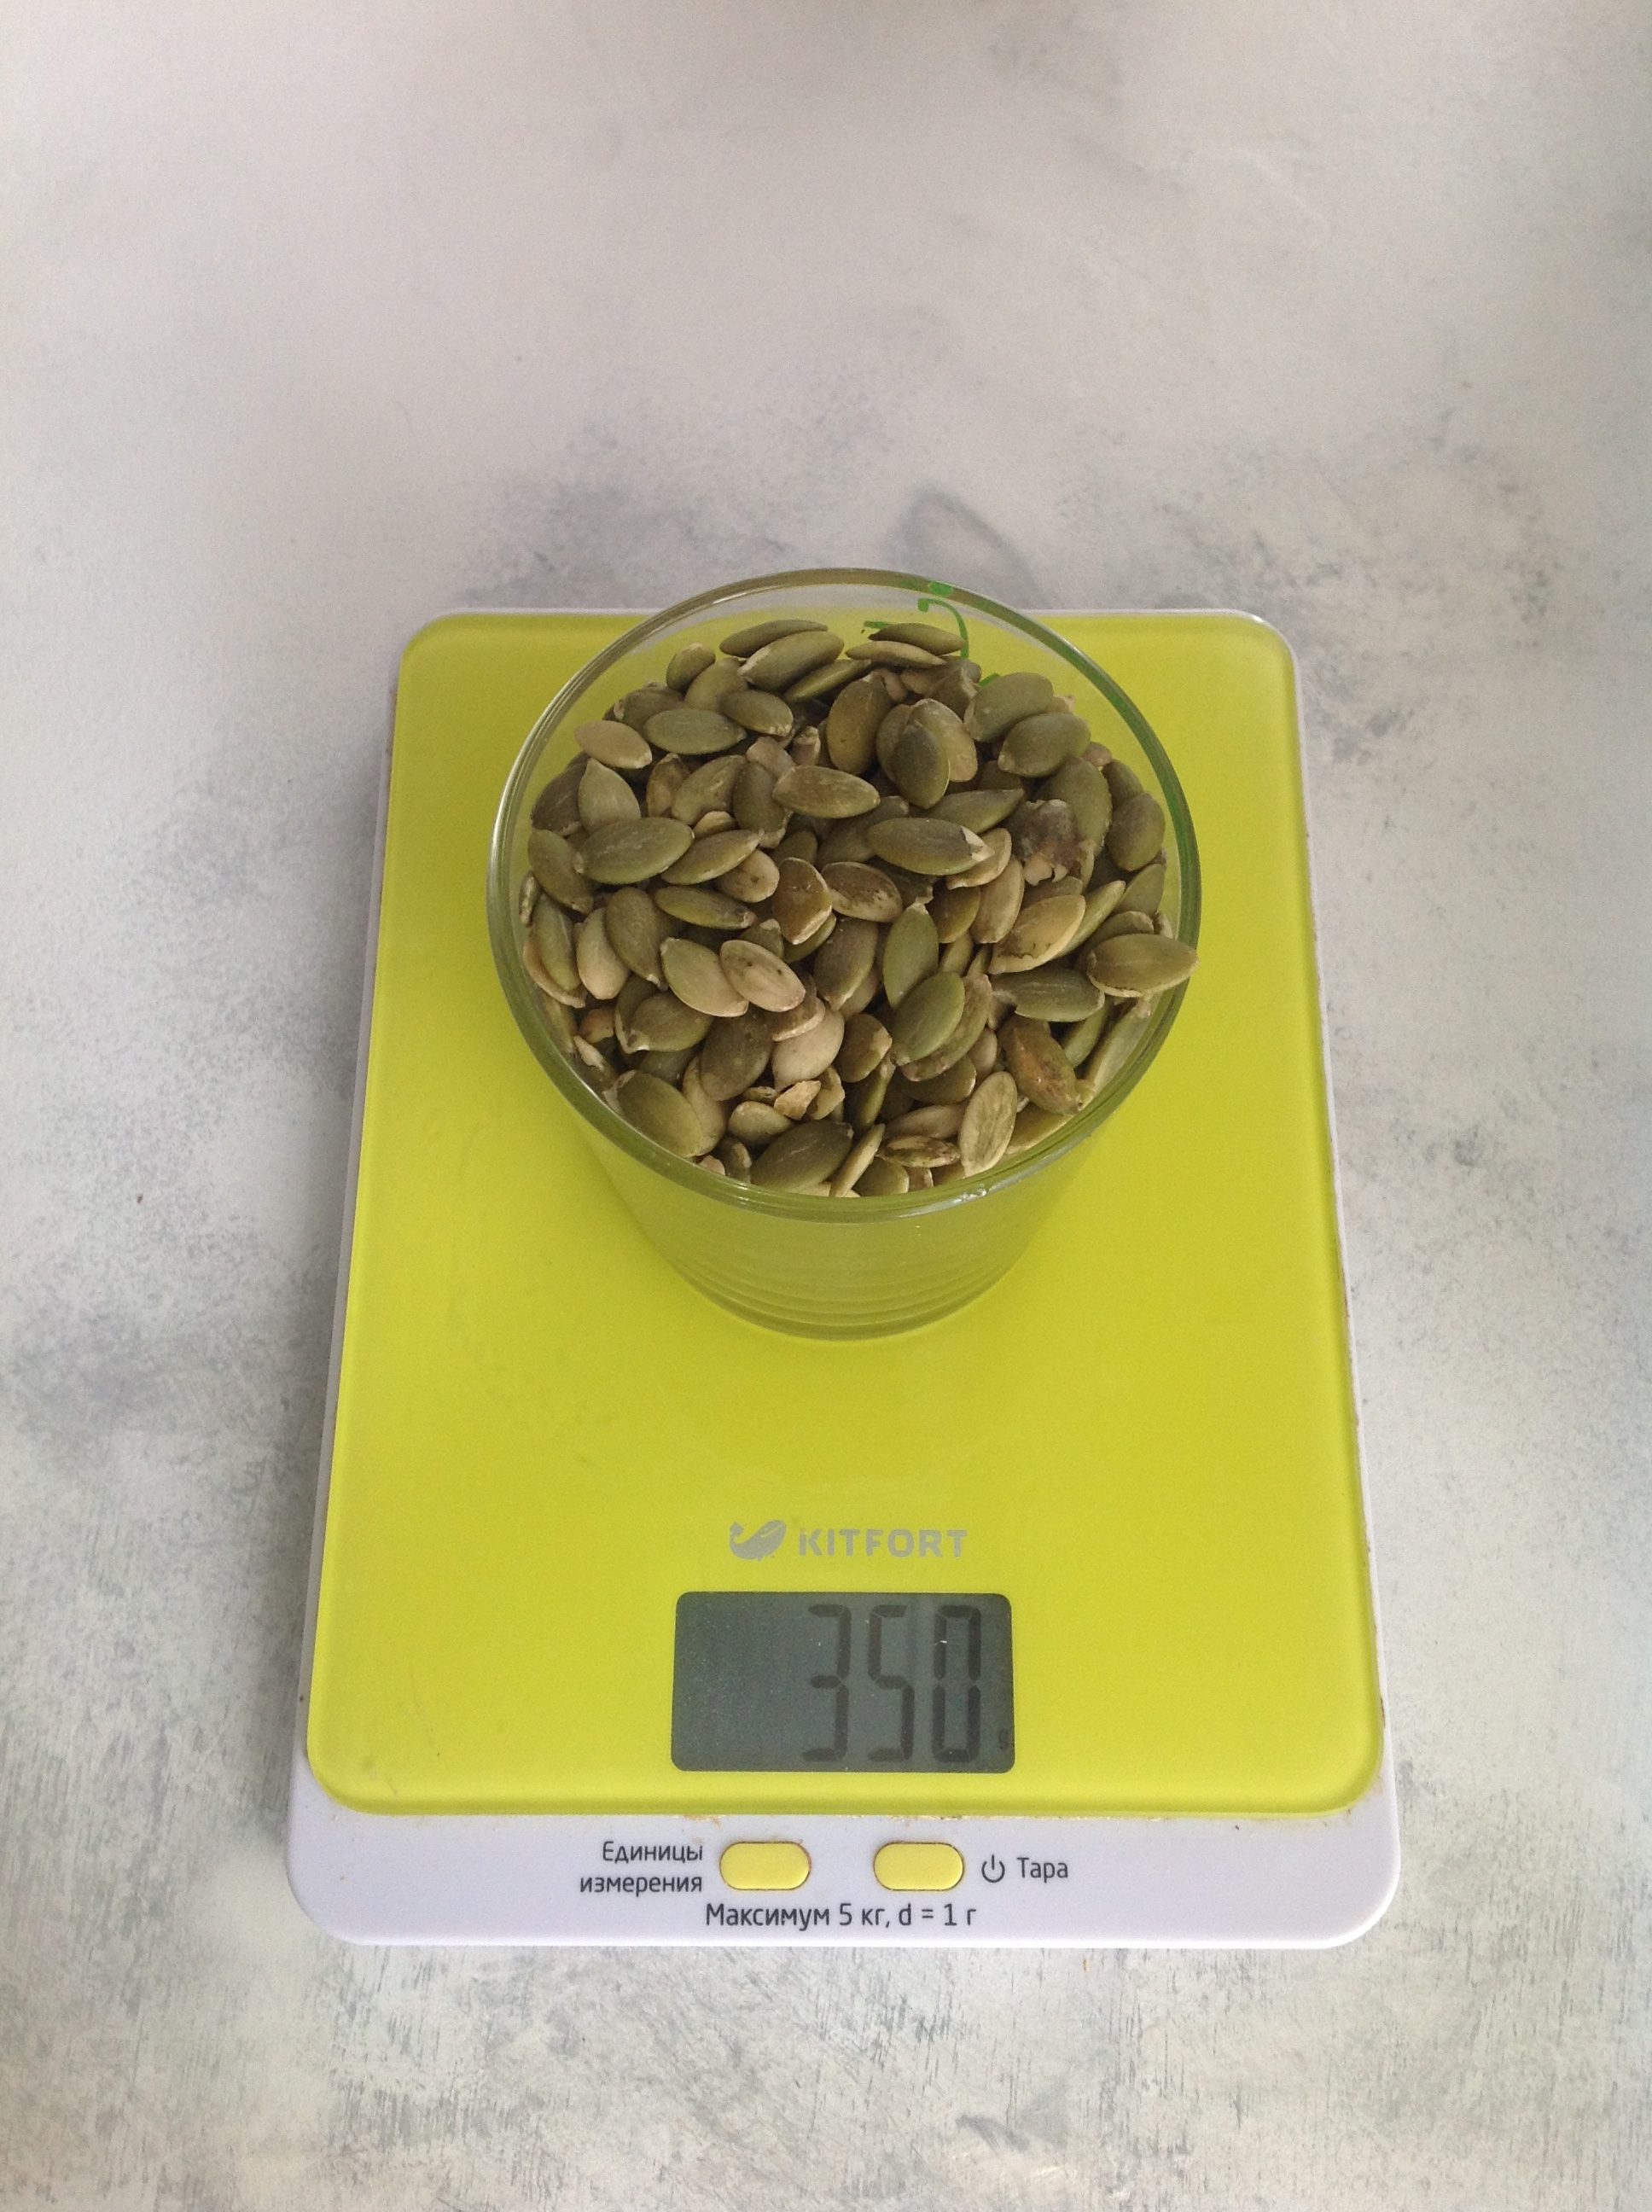 How much do pumpkin seeds weigh in a 250 ml glass?